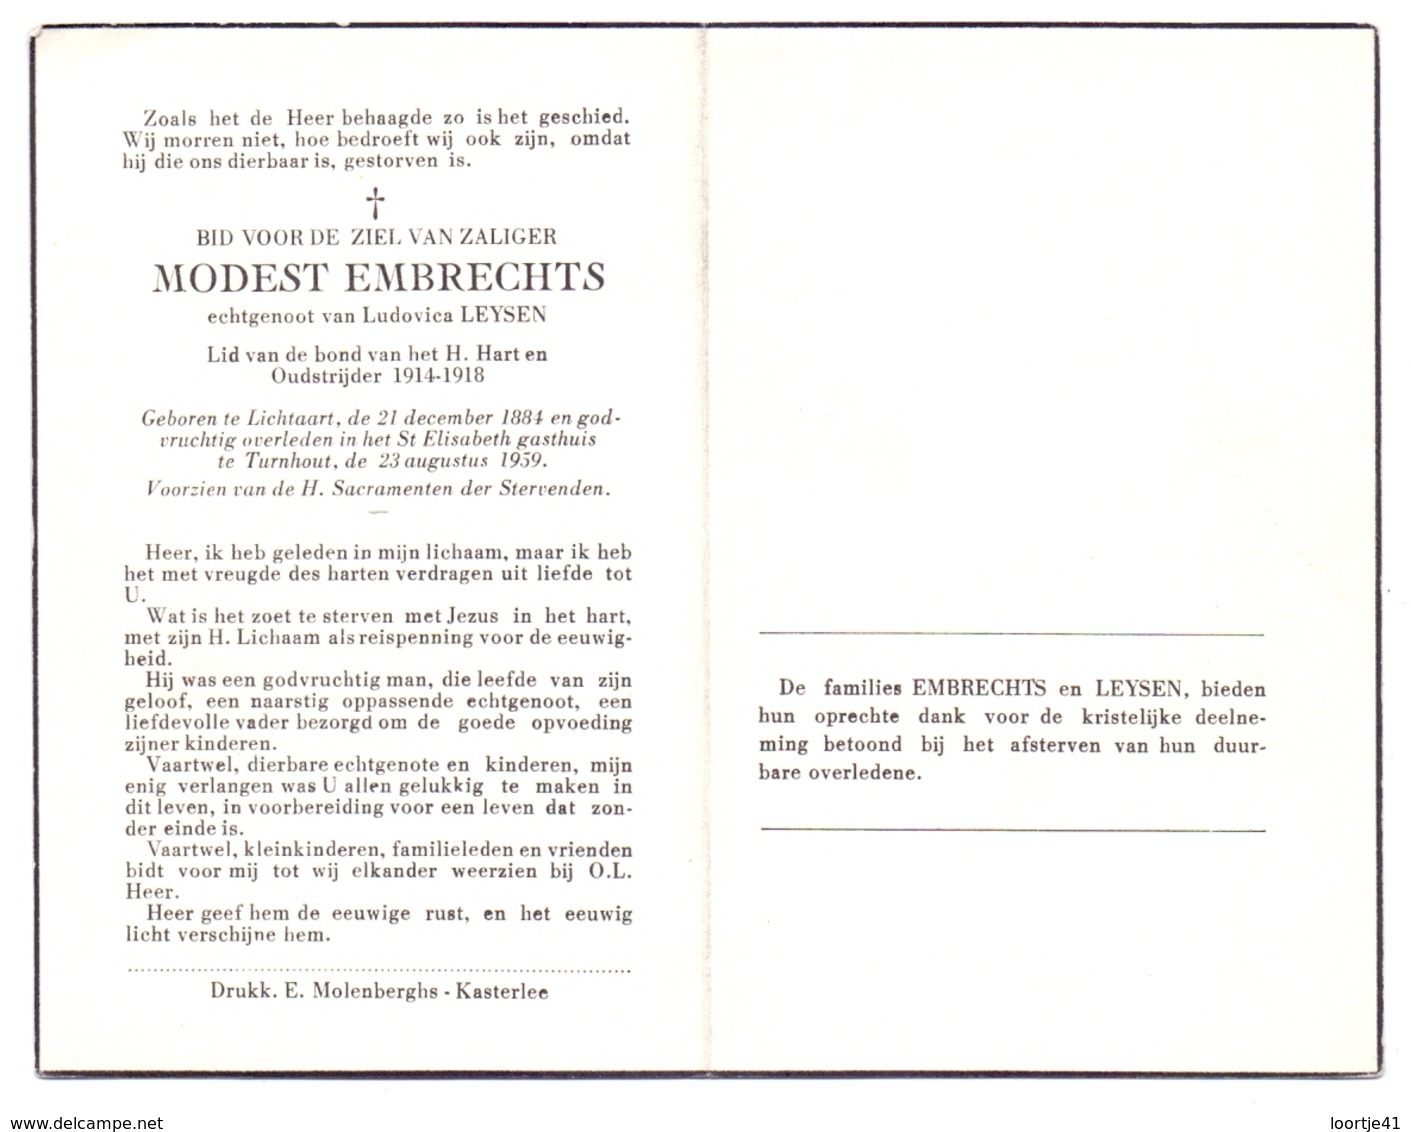 Devotie Doodsprentje Overlijden - Oudstrijder Modest Embrechts - Lichtaart 1884 - Turnhout 1959 - Décès